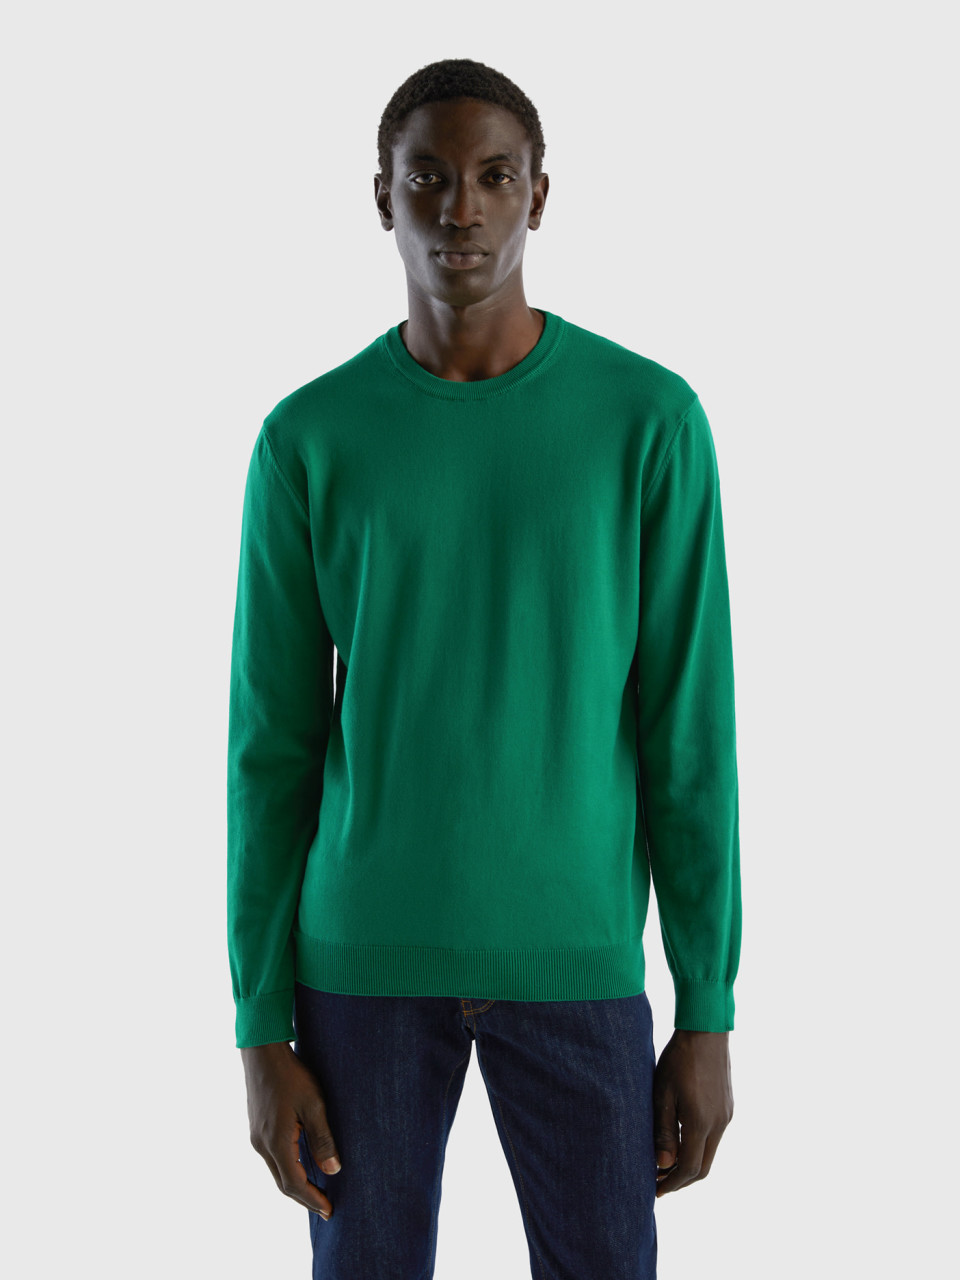 Benetton, Crew Neck Sweater In 100% Cotton, Dark Green, Men